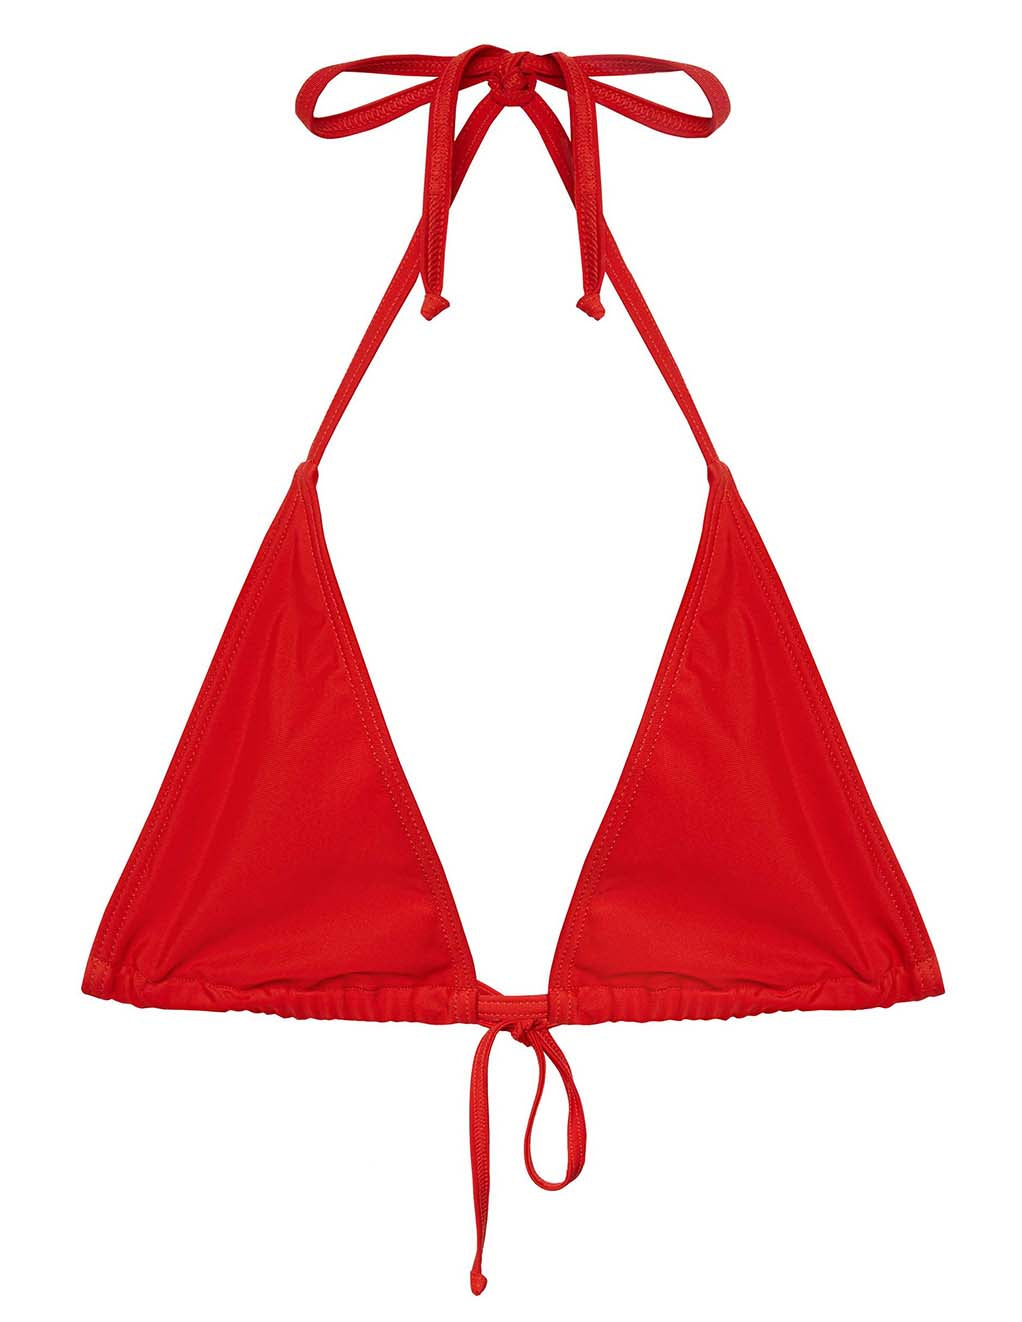 HUSTLER Micro Triangle Bikini Top- Red- Front Main